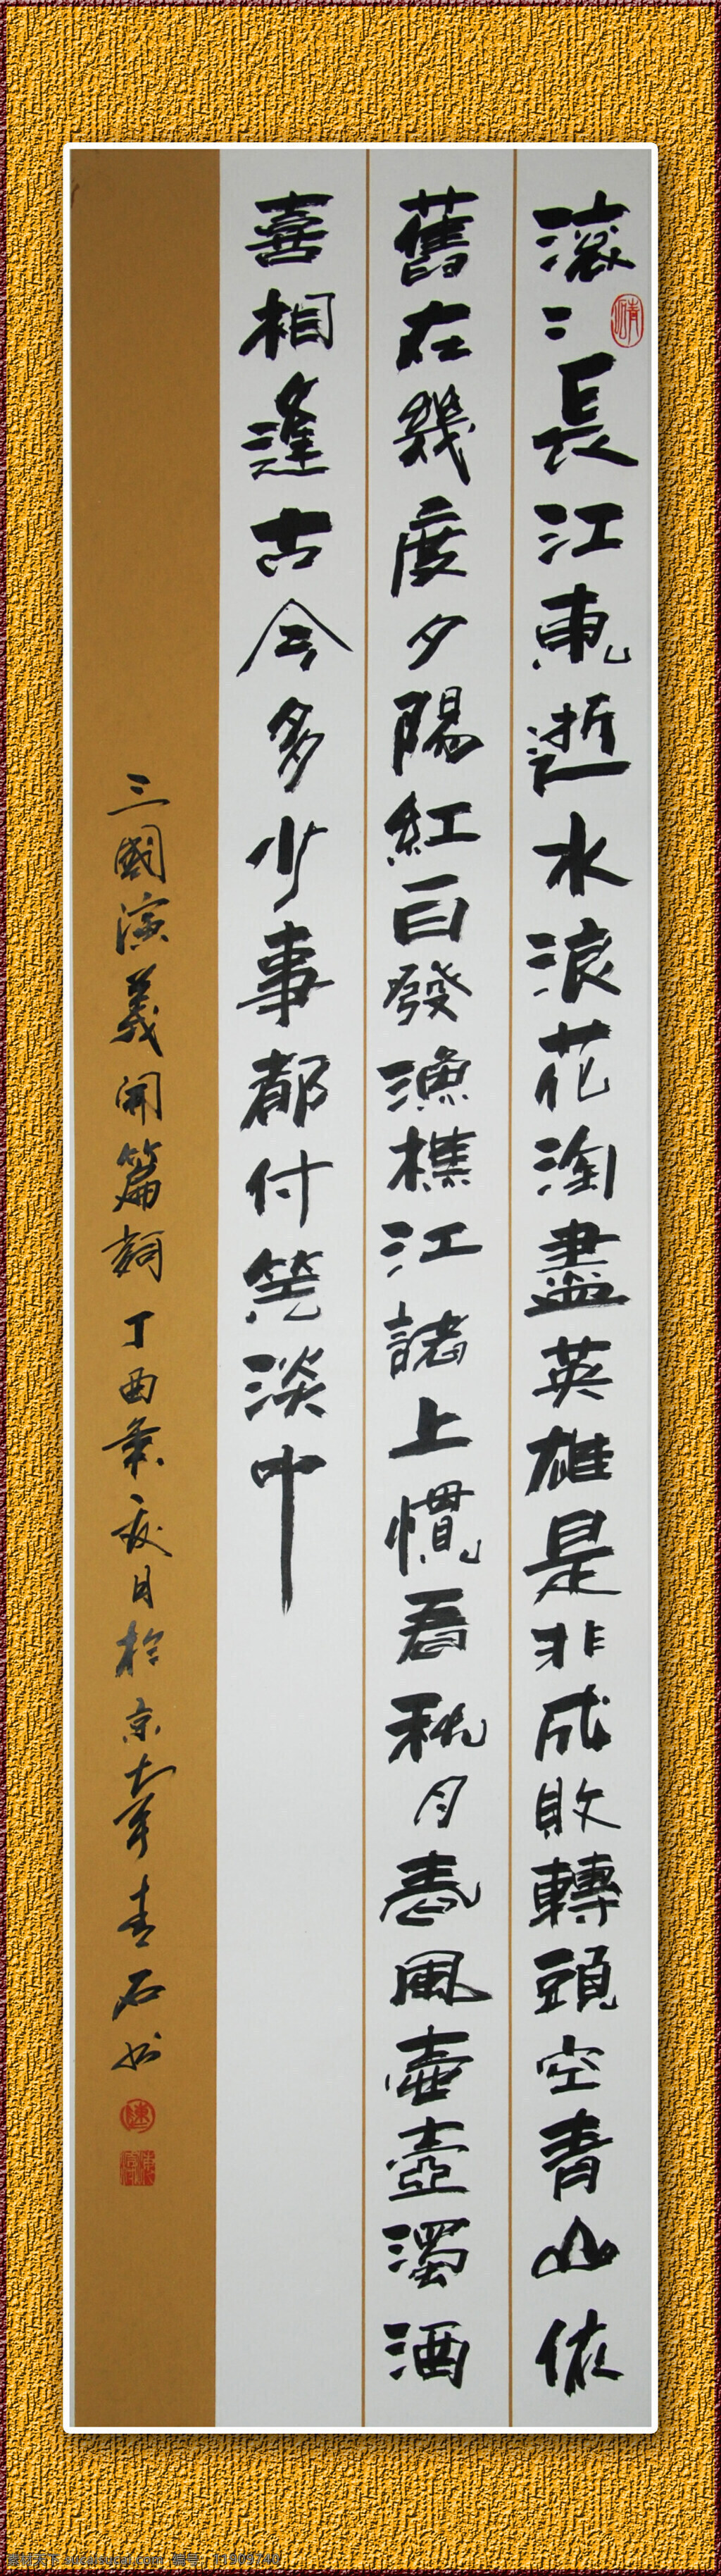 青石书法 青石书画 书法 中国书法 三国开篇词 文化艺术 绘画书法